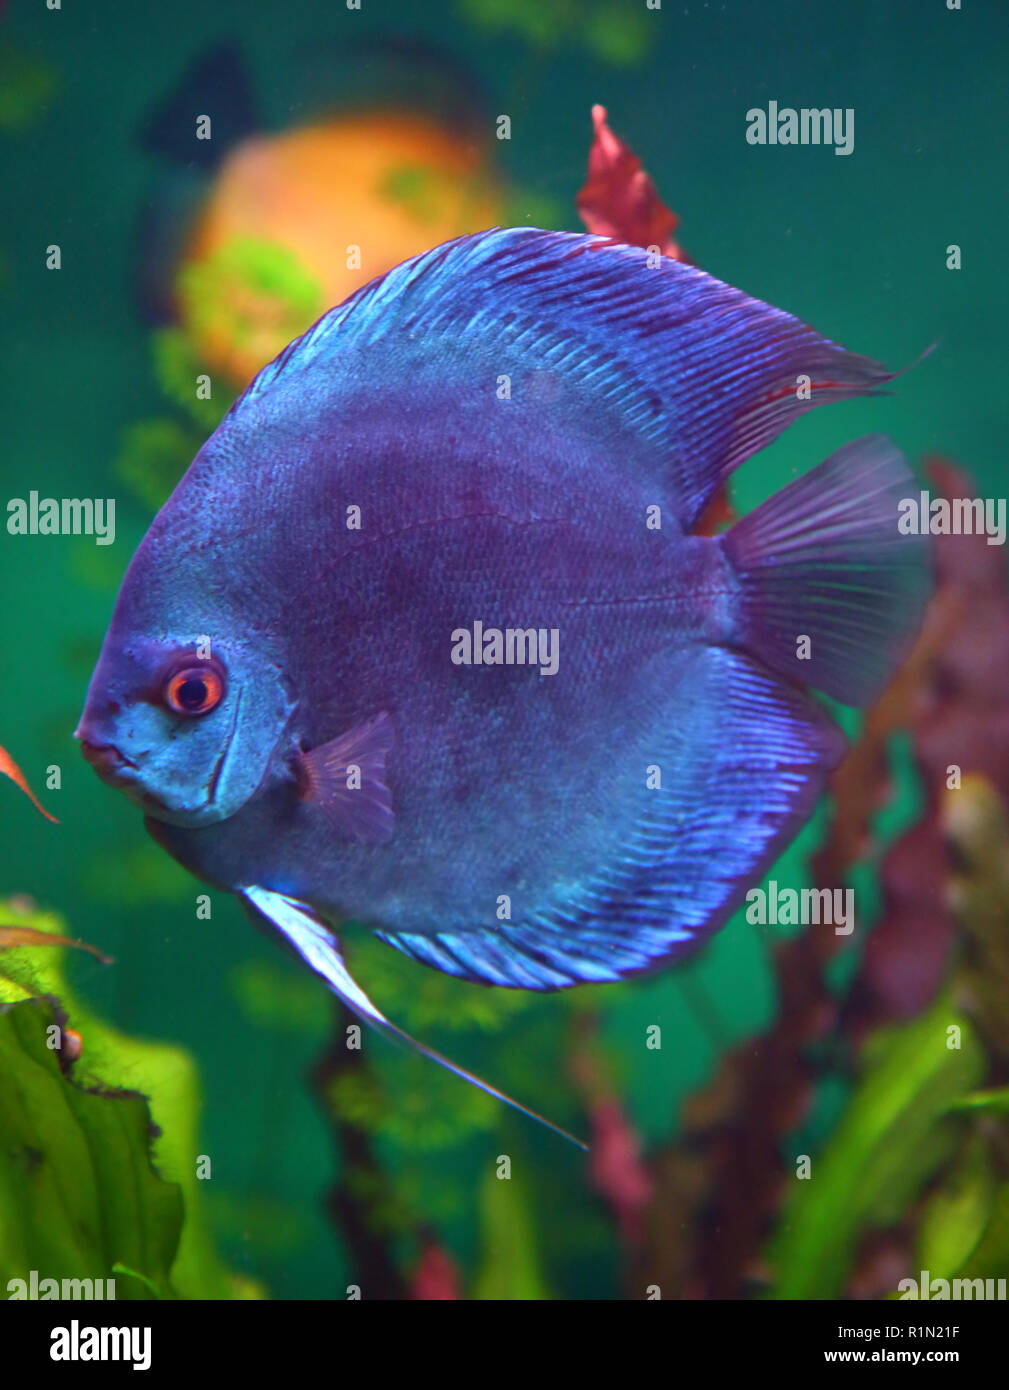 blue discus fish in aquarium Stock Photo